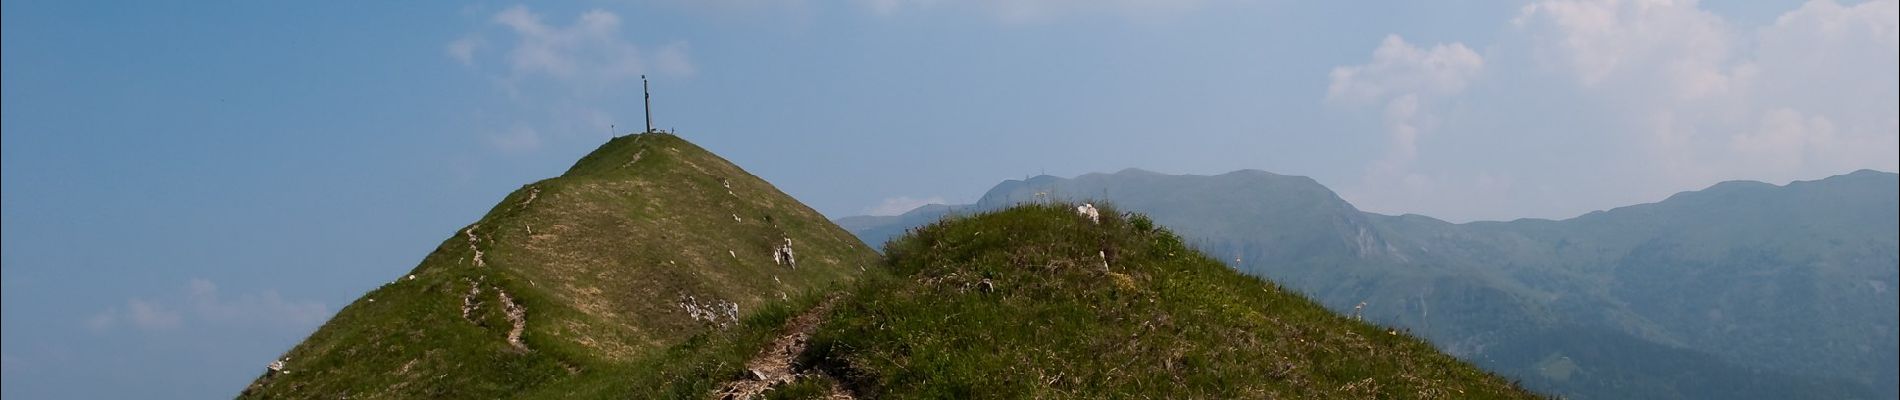 Randonnée A pied Sale Marasino - Malghe in Rete - Trekking - Le Creste Tappa 1 - Photo